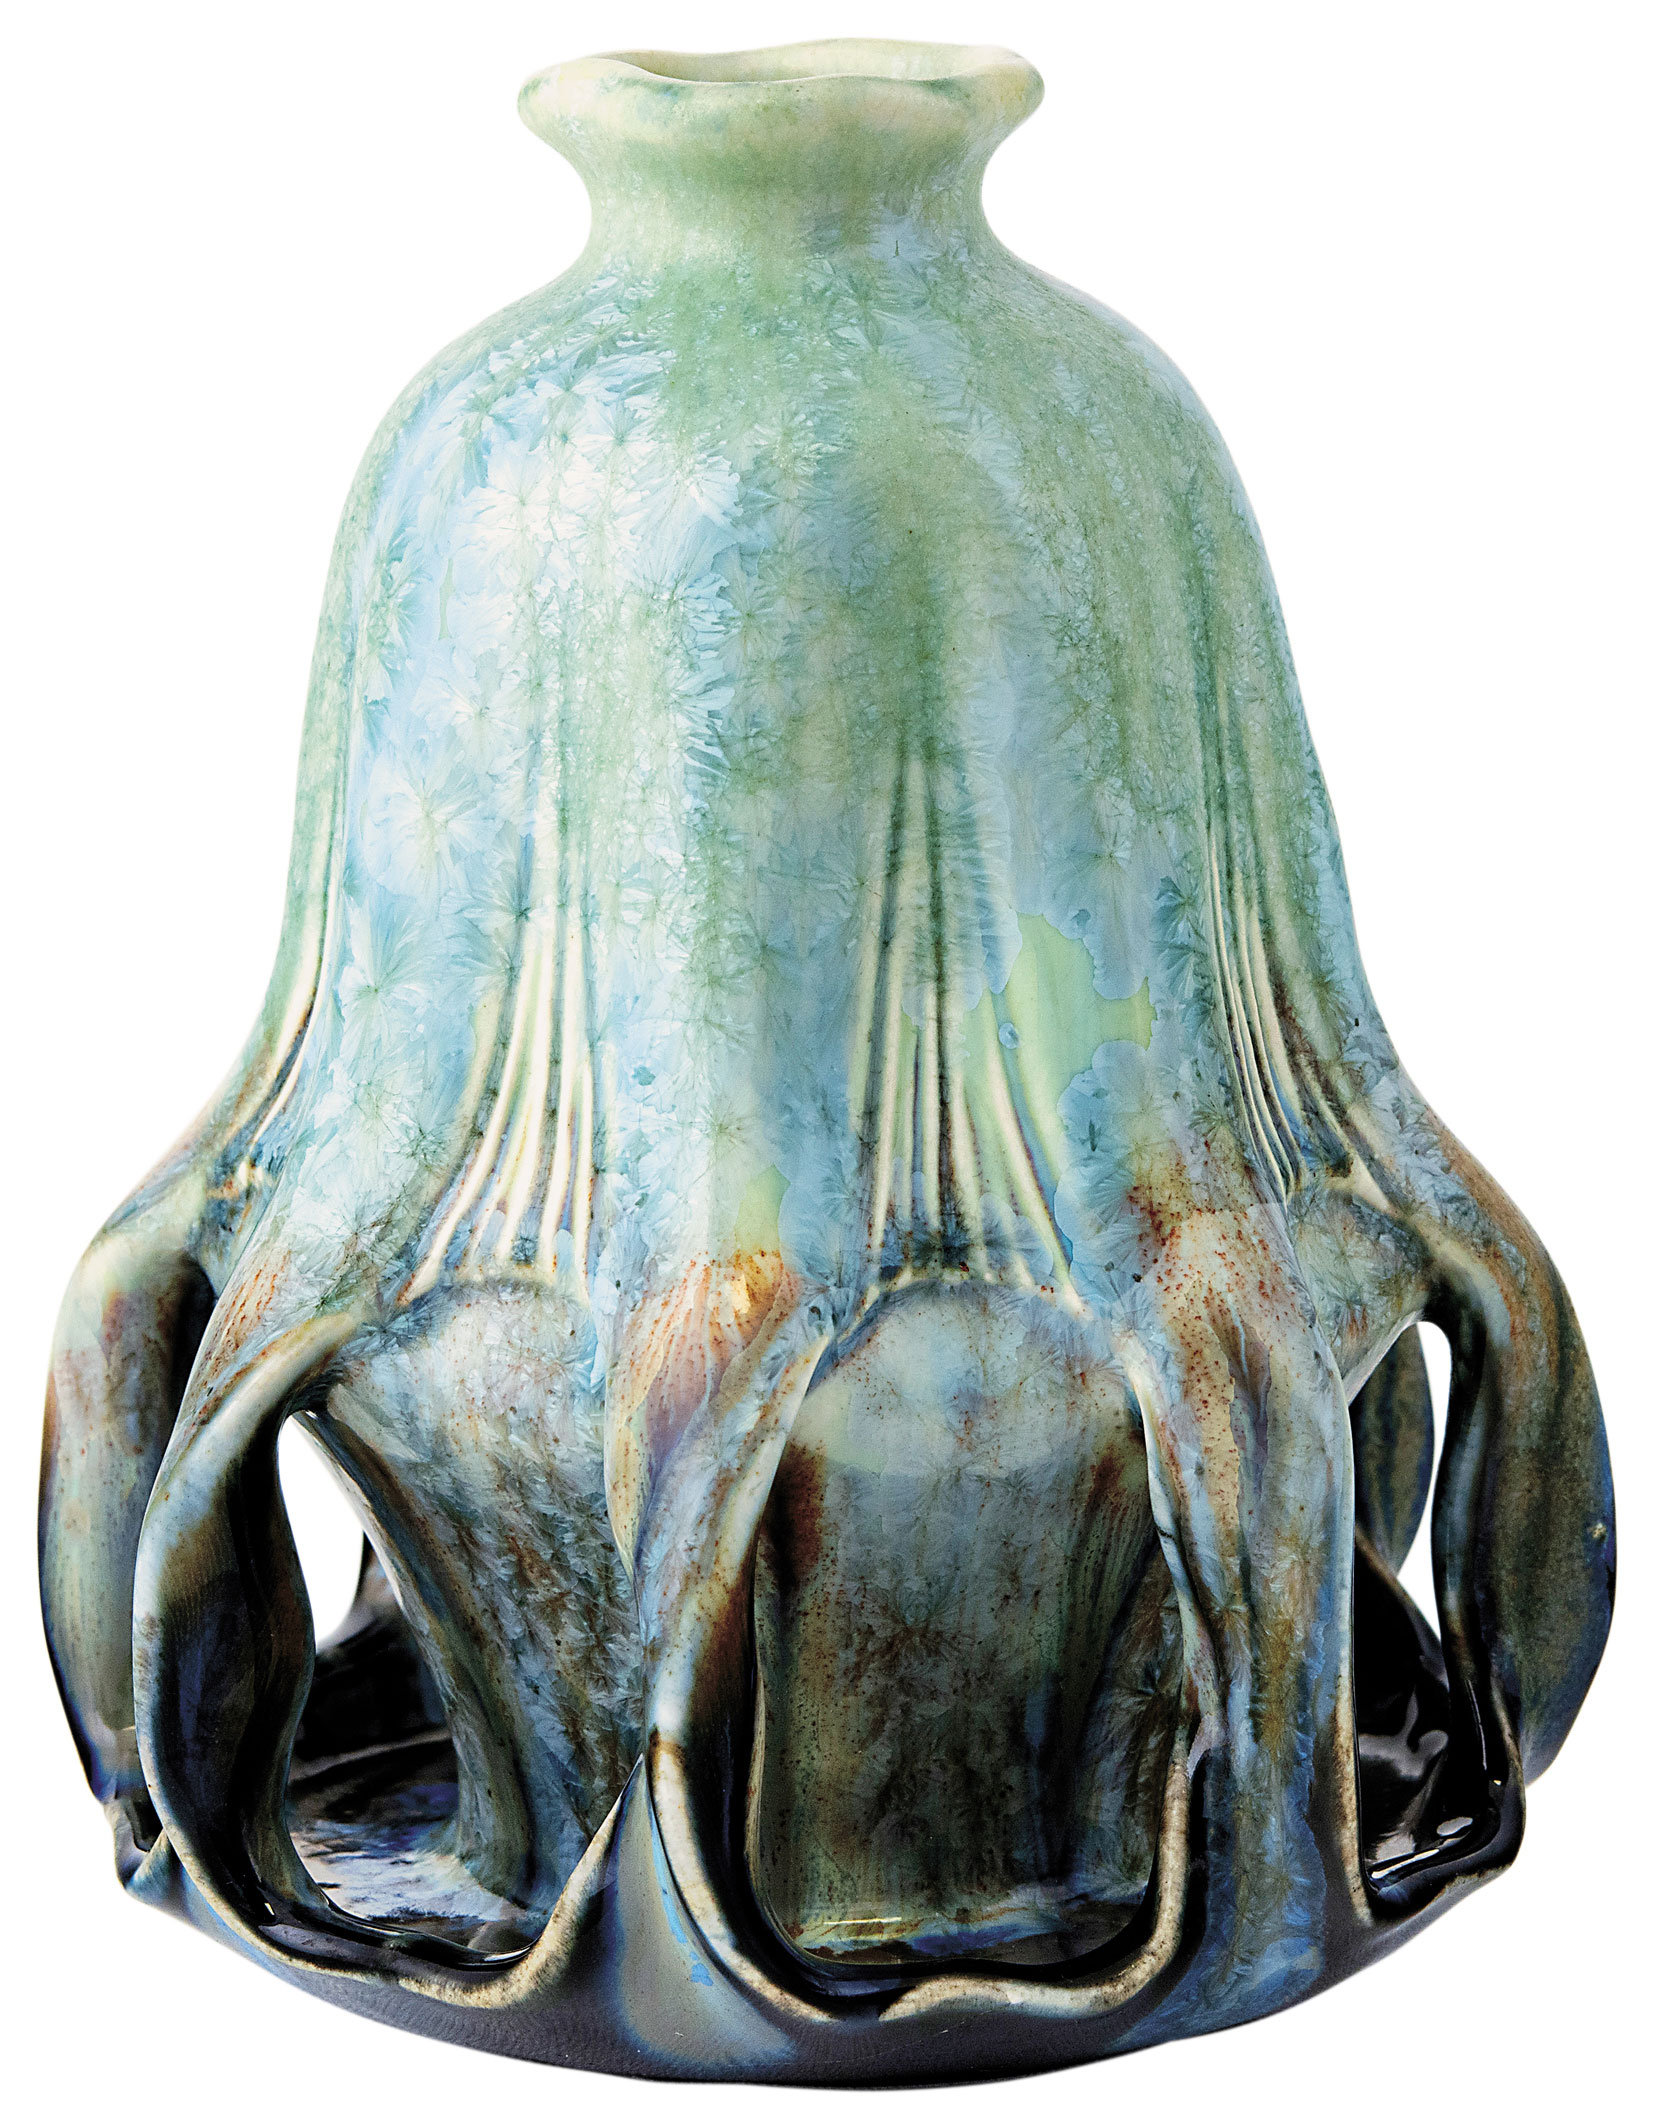 Zsolnay Vase with Crystalline Glaze, 1900, DESIGN BY: APÁTI ABT SÁNDOR